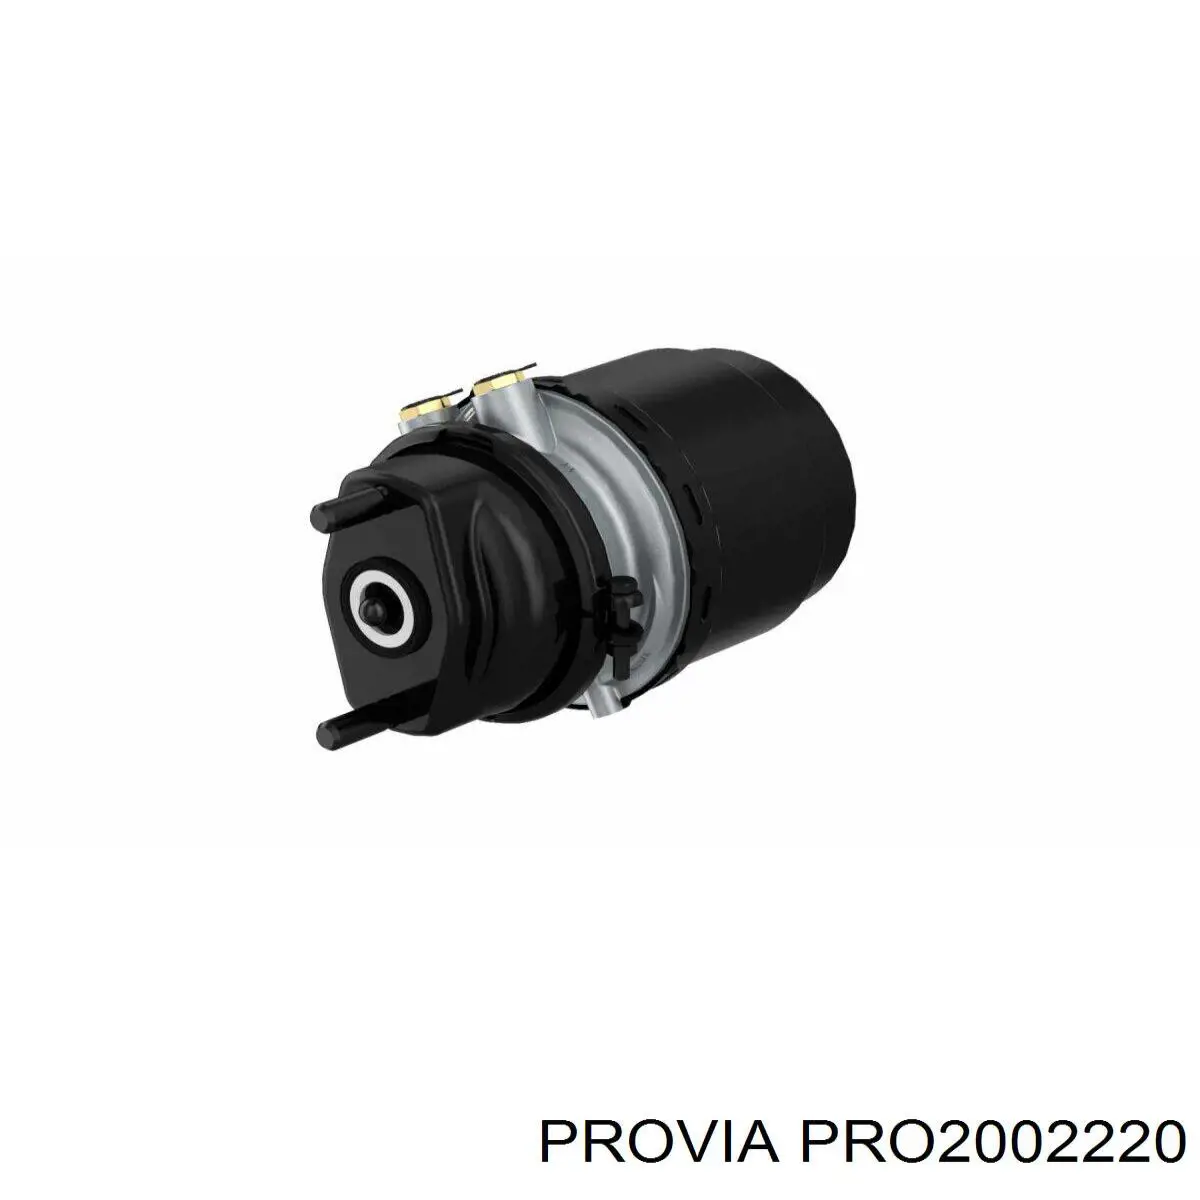 PRO2002220 Provia conector (cabezal De Mangueras Del Sistema Neumatico)